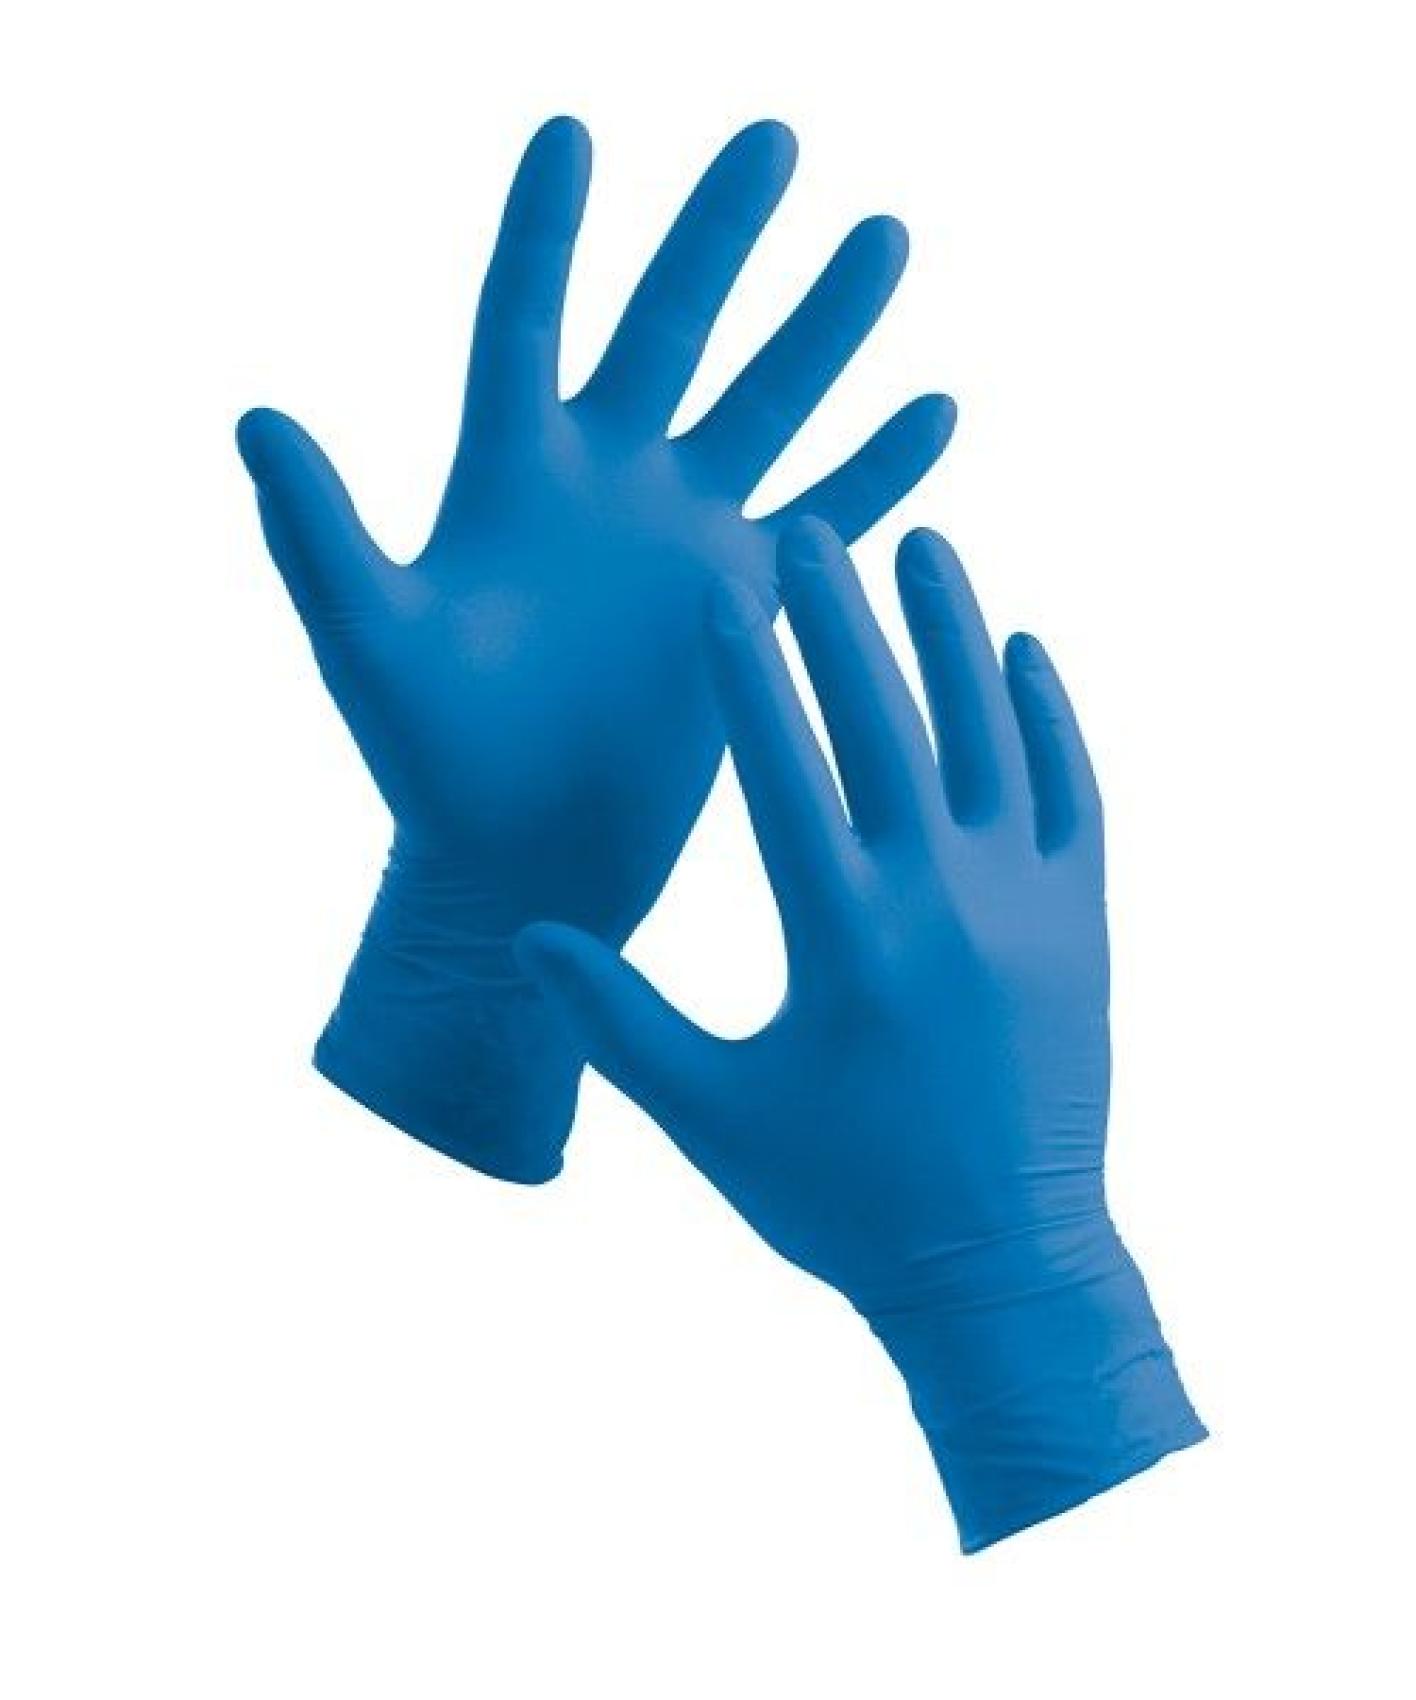 Rukavice chirurgick modr nitrilov XL/100ks - Kliknutm na obrzek zavete